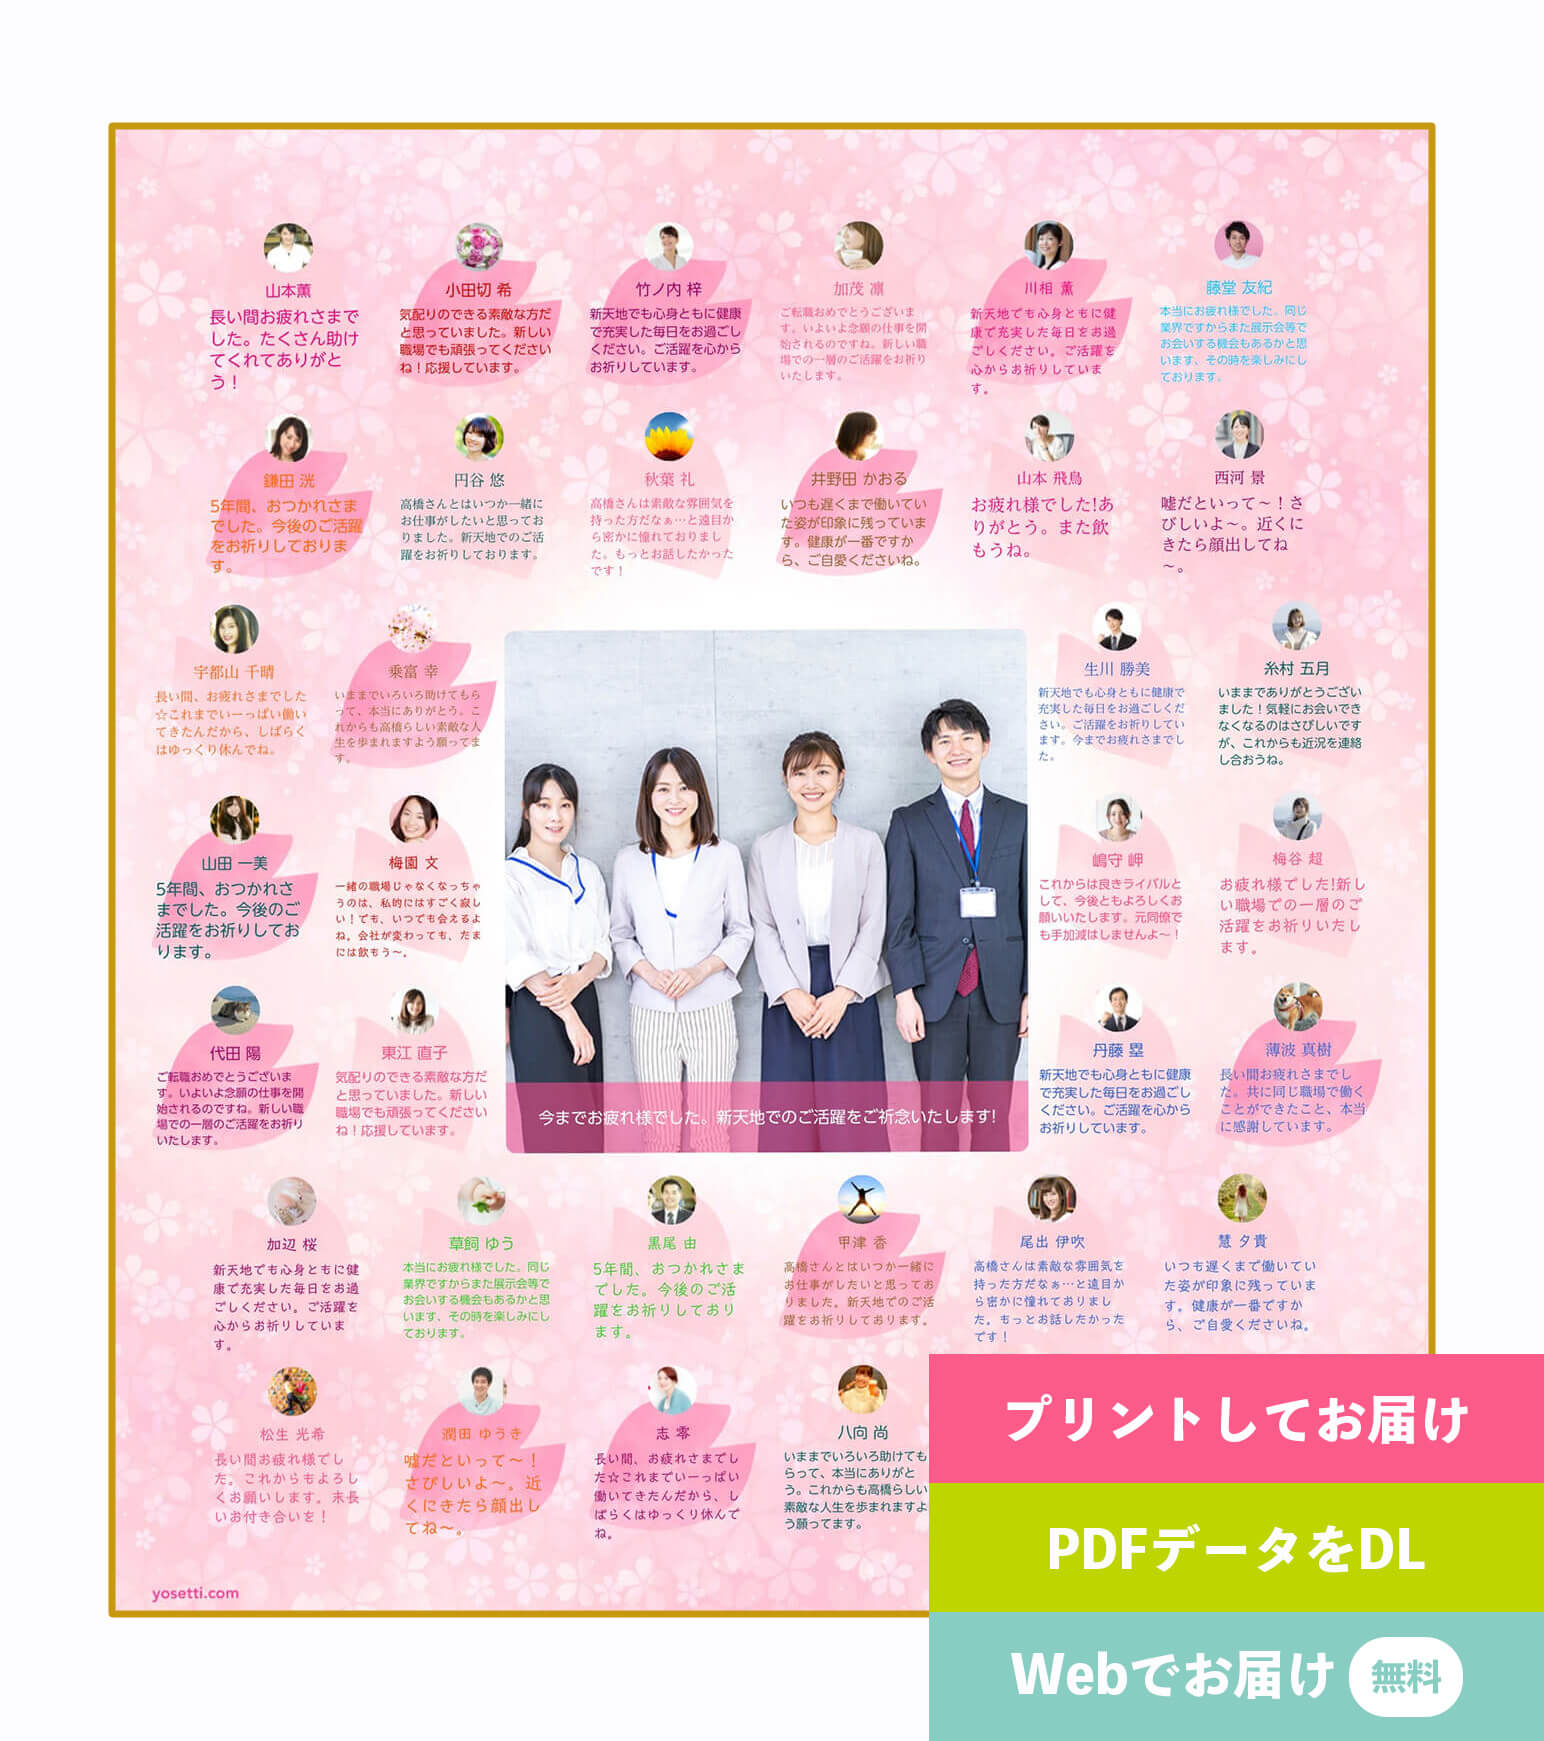 デザイン色紙「中央の写真大きめ・人数多め! -Sakura-(大人数用・80文字)」